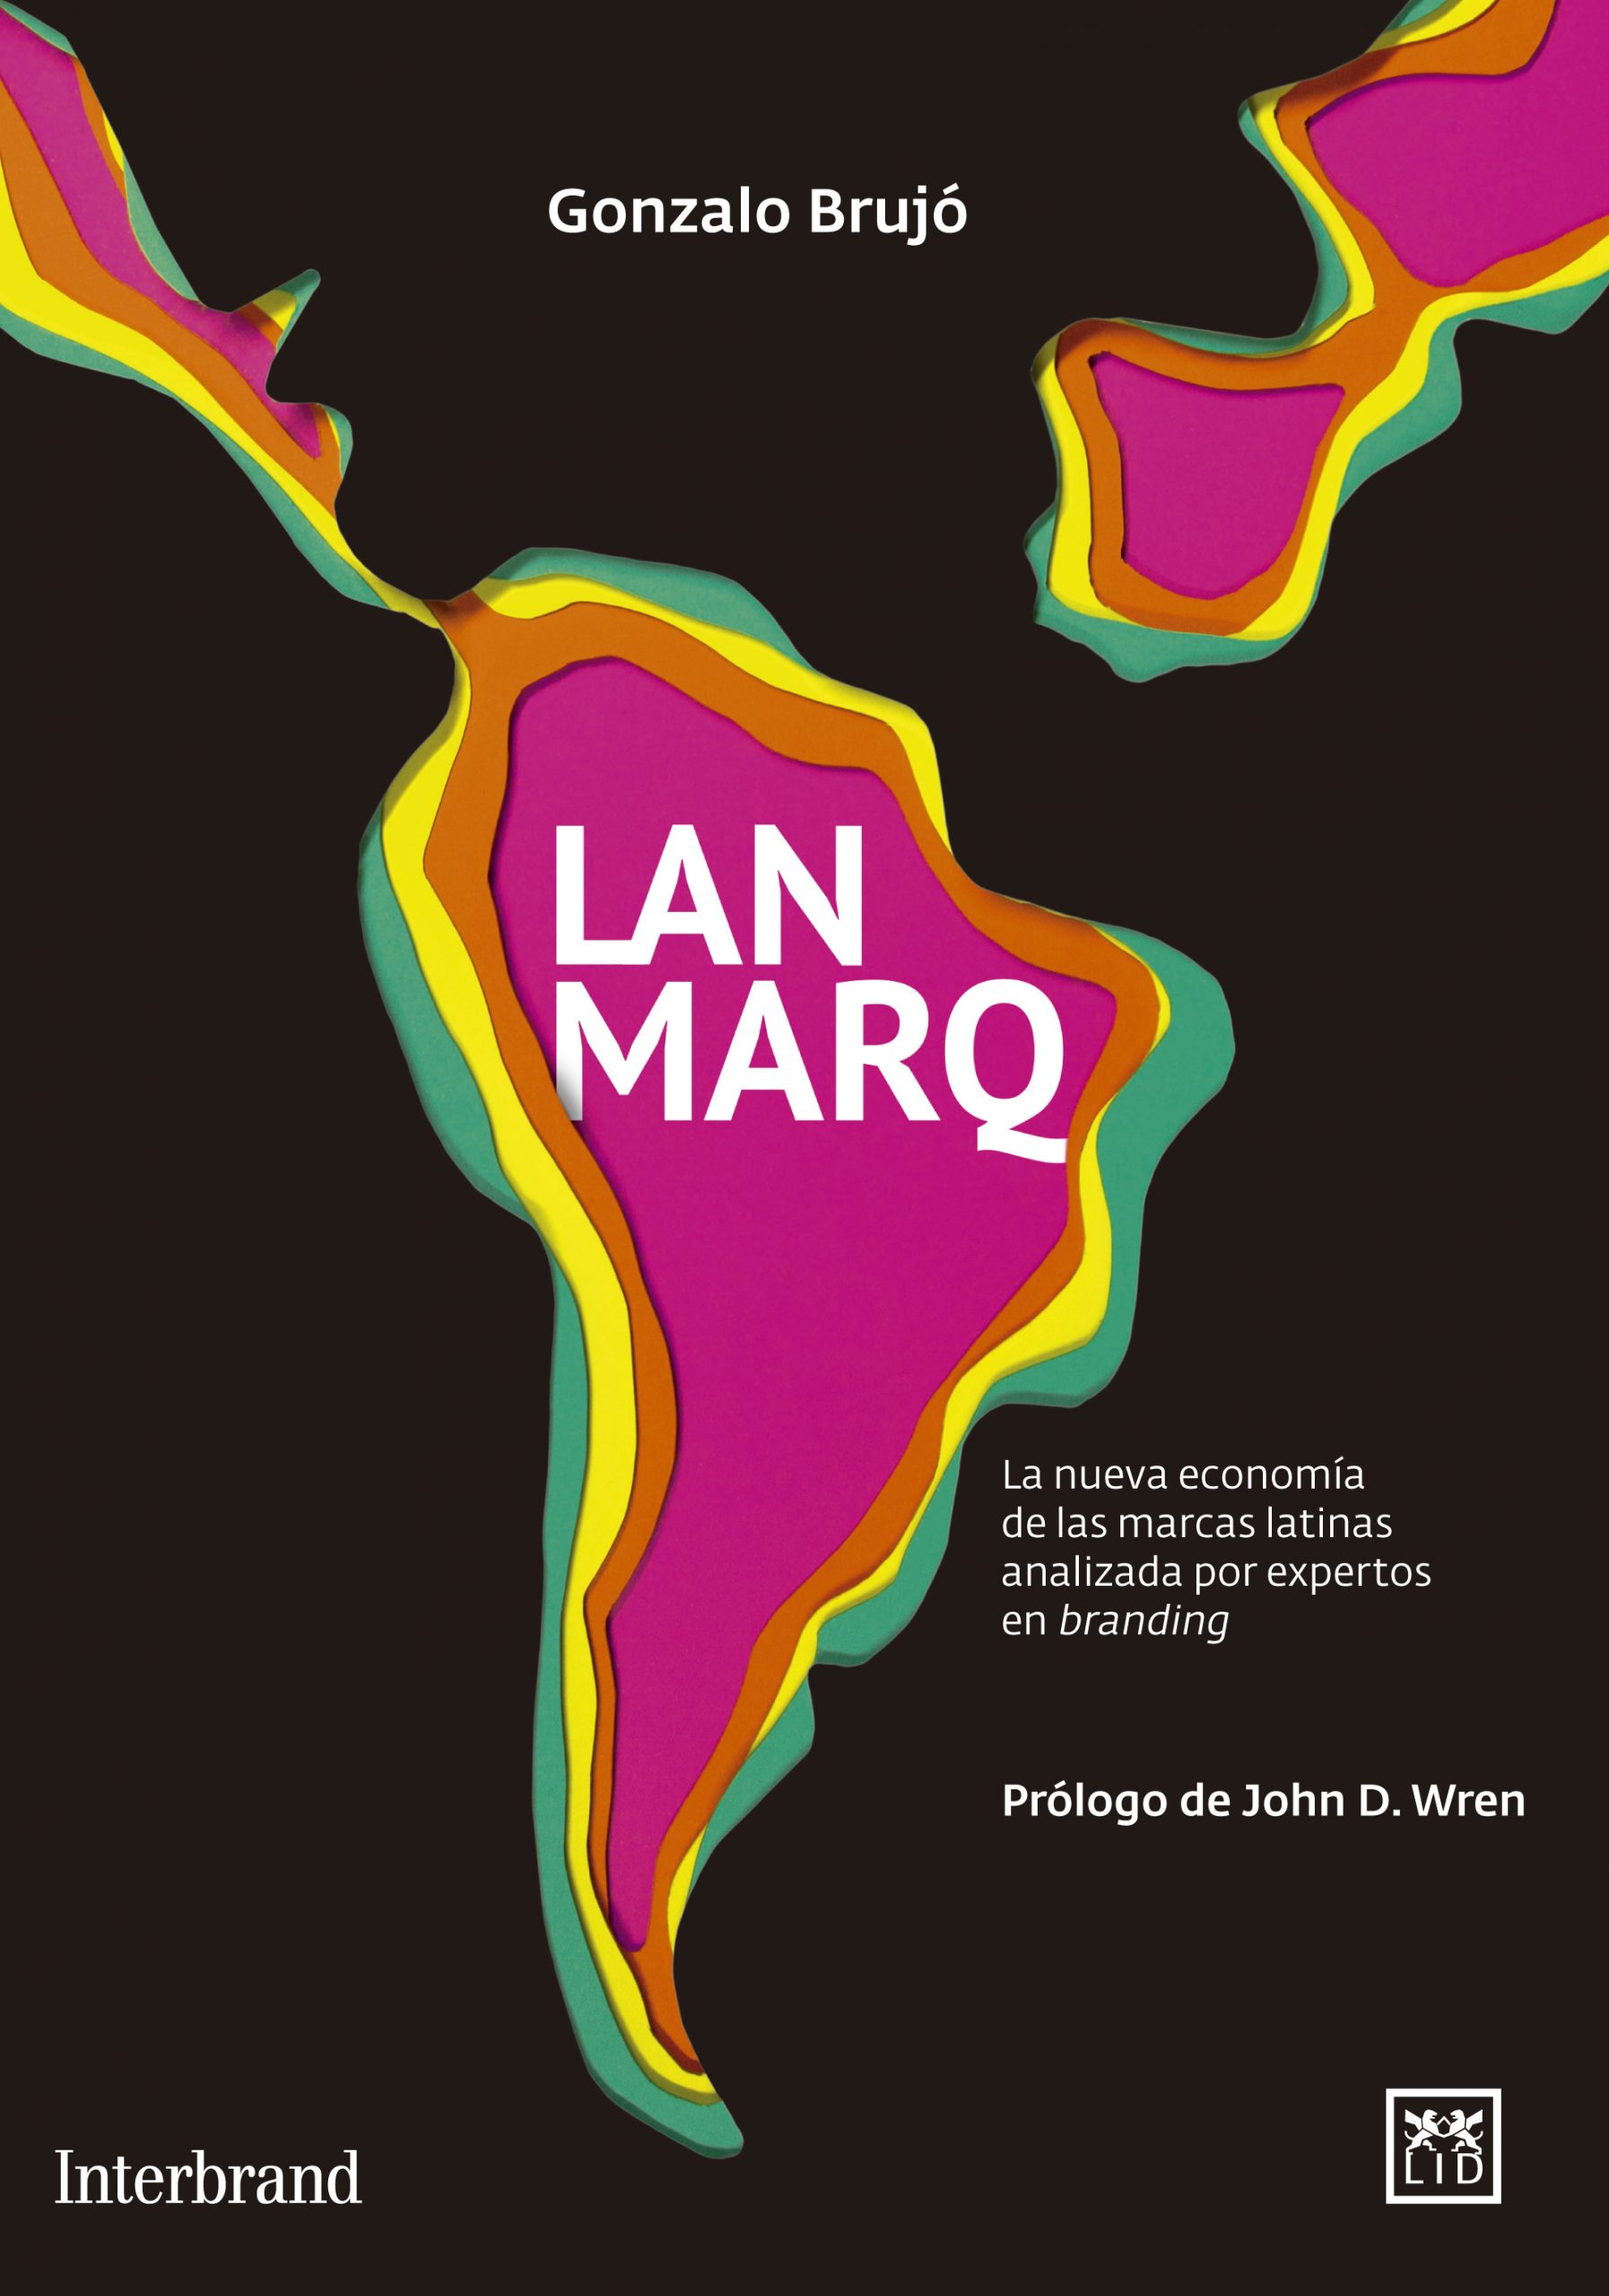 Lanmarq, un libro de referencia sobre las marcas latinoamericanas, españolas y portuguesas